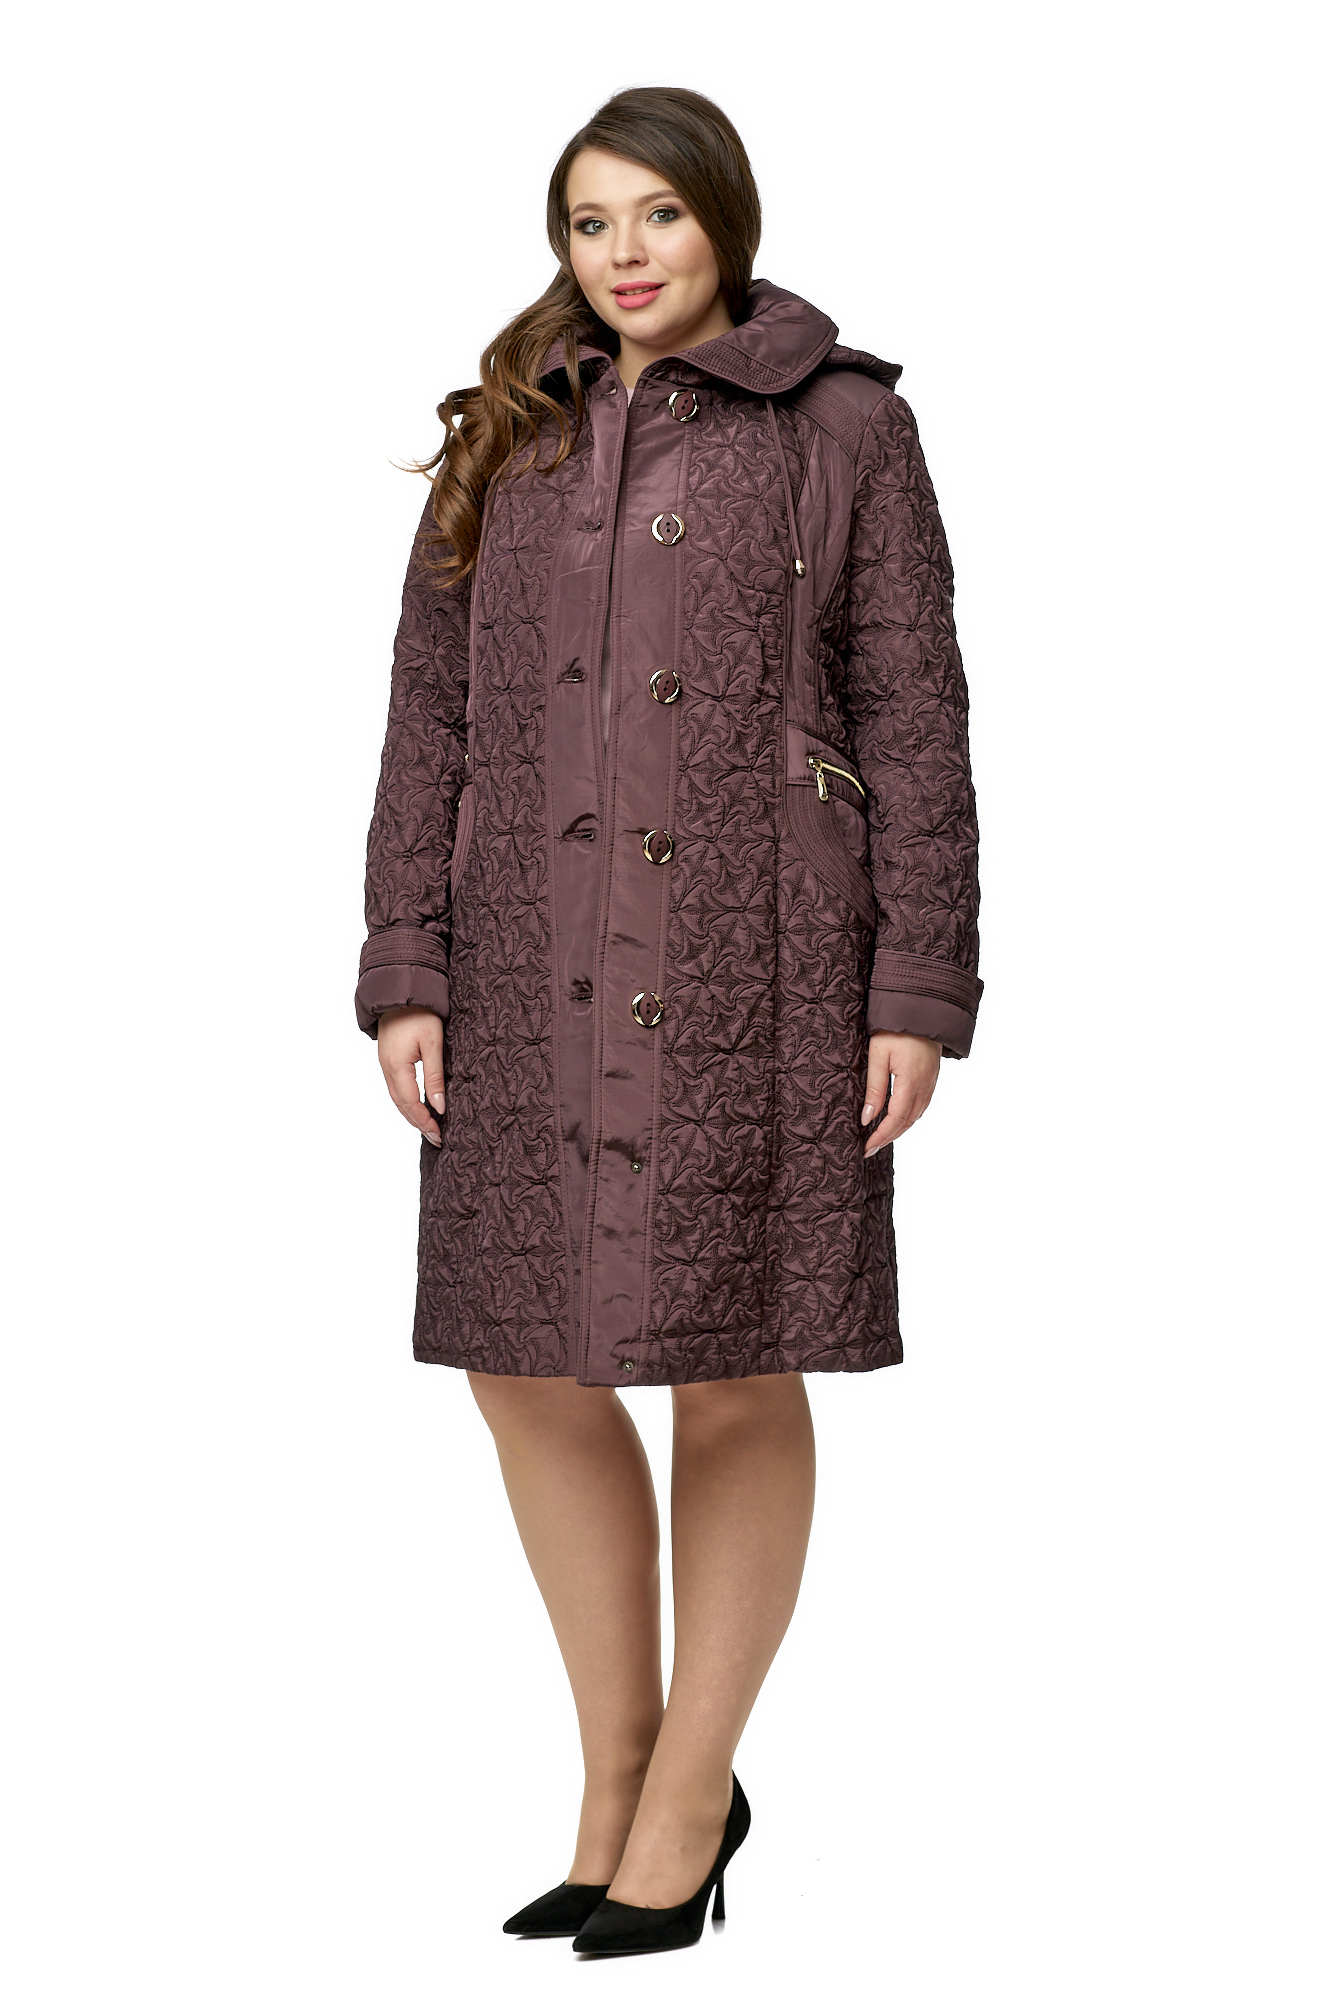 

Пальто женское МОСМЕХА 8020452 коричневое 56 RU, Коричневый, 8020452